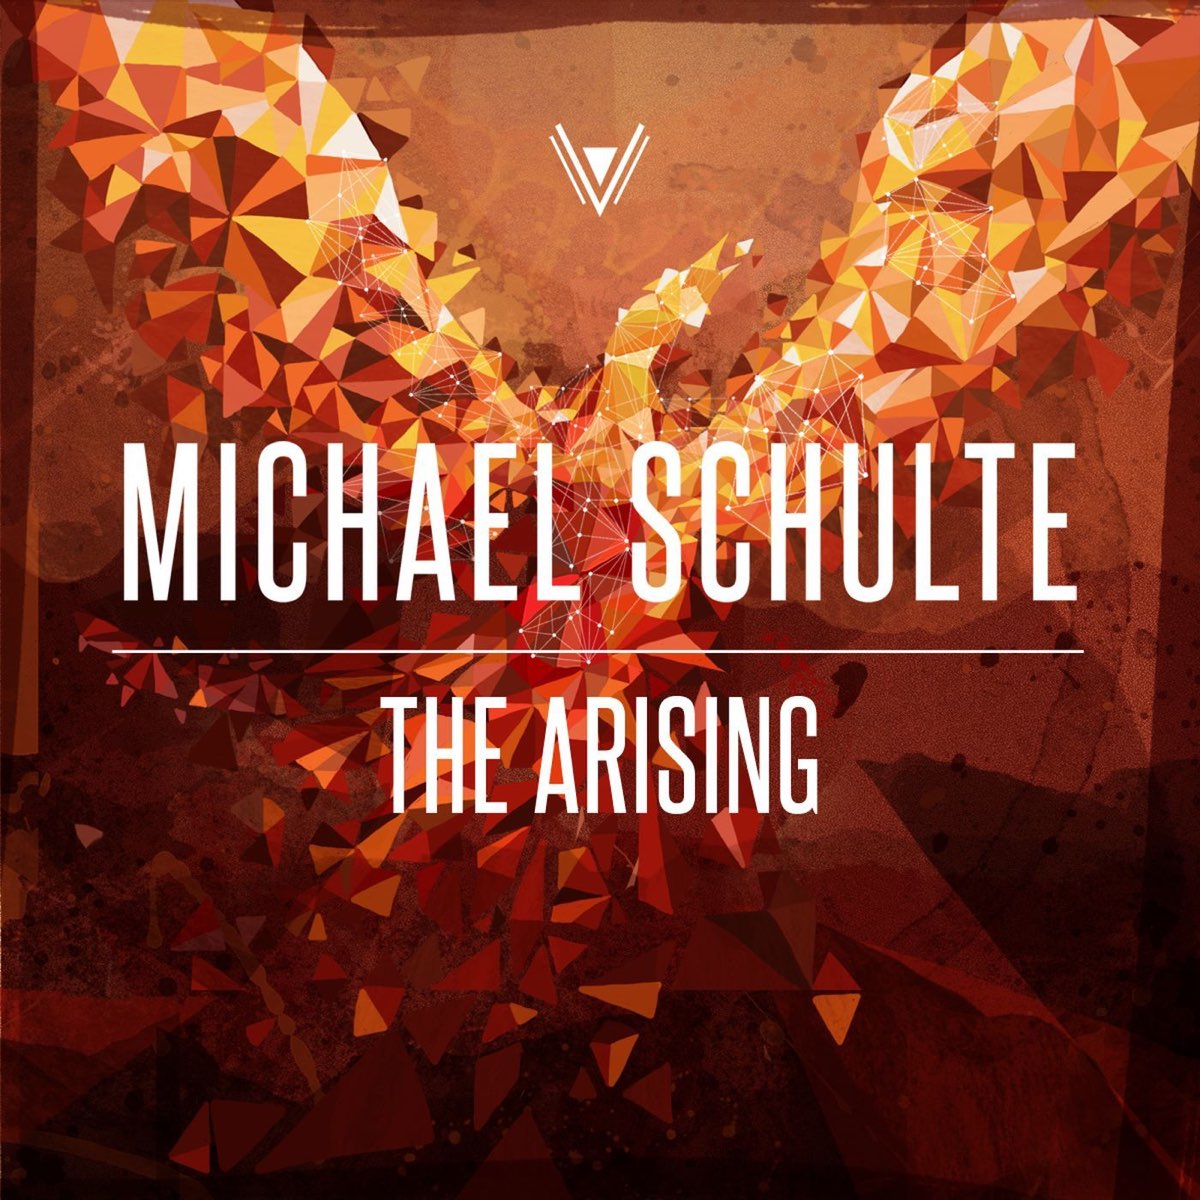 Michael Schulte — The Maze cover artwork